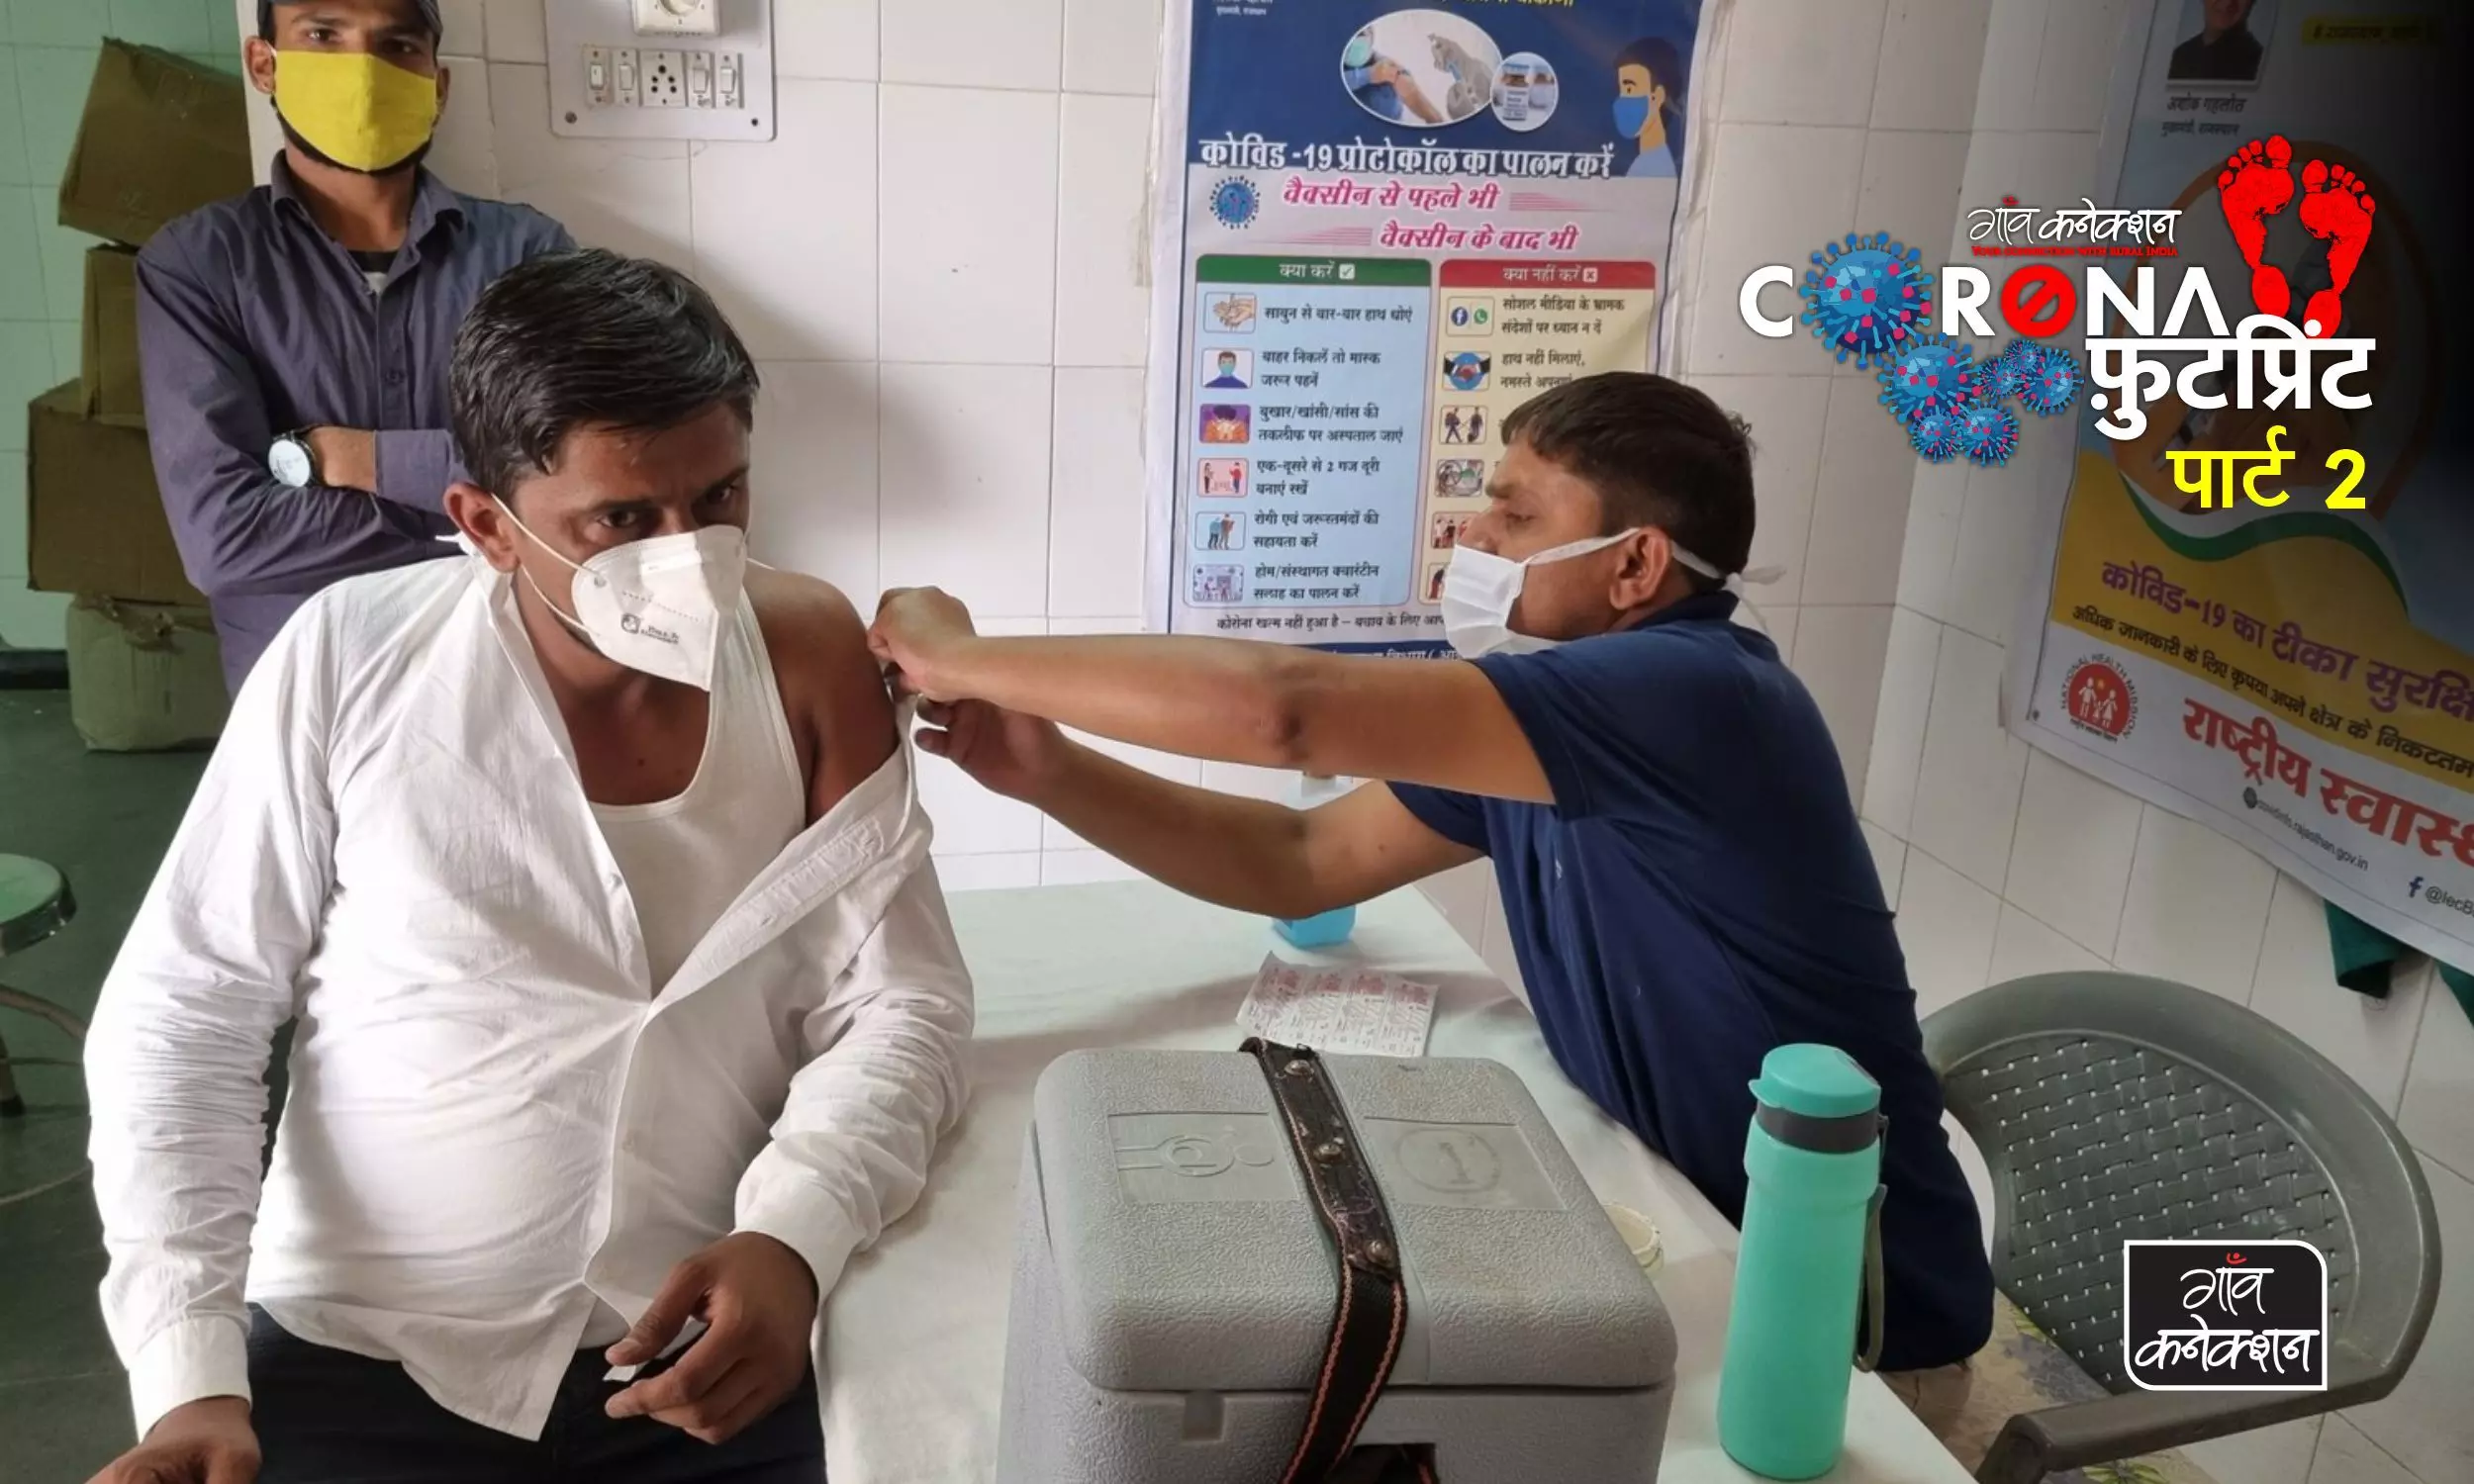 ग्रामीण भारत में जागरुकता के अभाव और भ्रम के कारण जांच करवाने, टीका लगवाने में हिचक रहे लोग